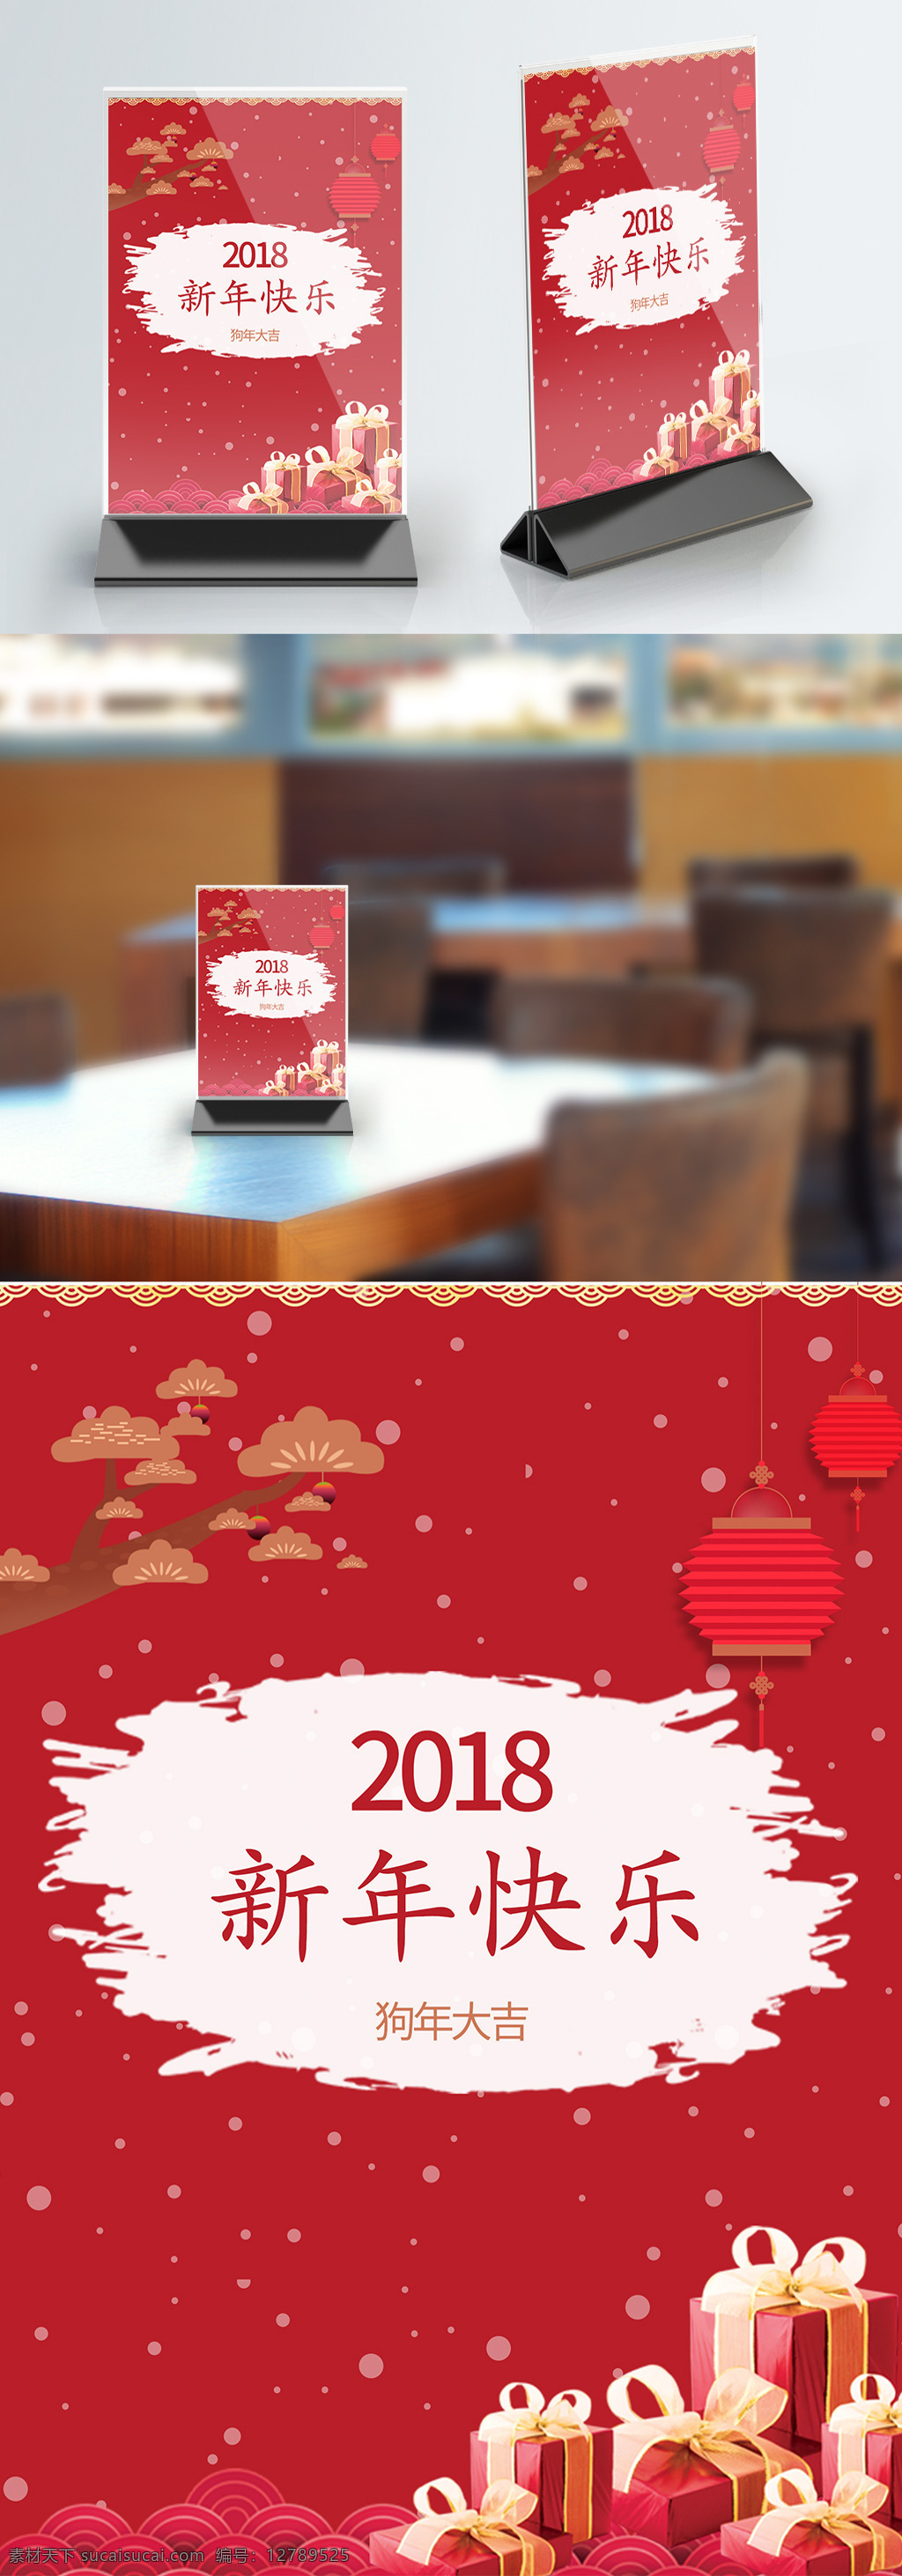 桌 卡 台卡 新年 中国 风 喜庆 桌牌设计 2018 中国风 桌卡台卡